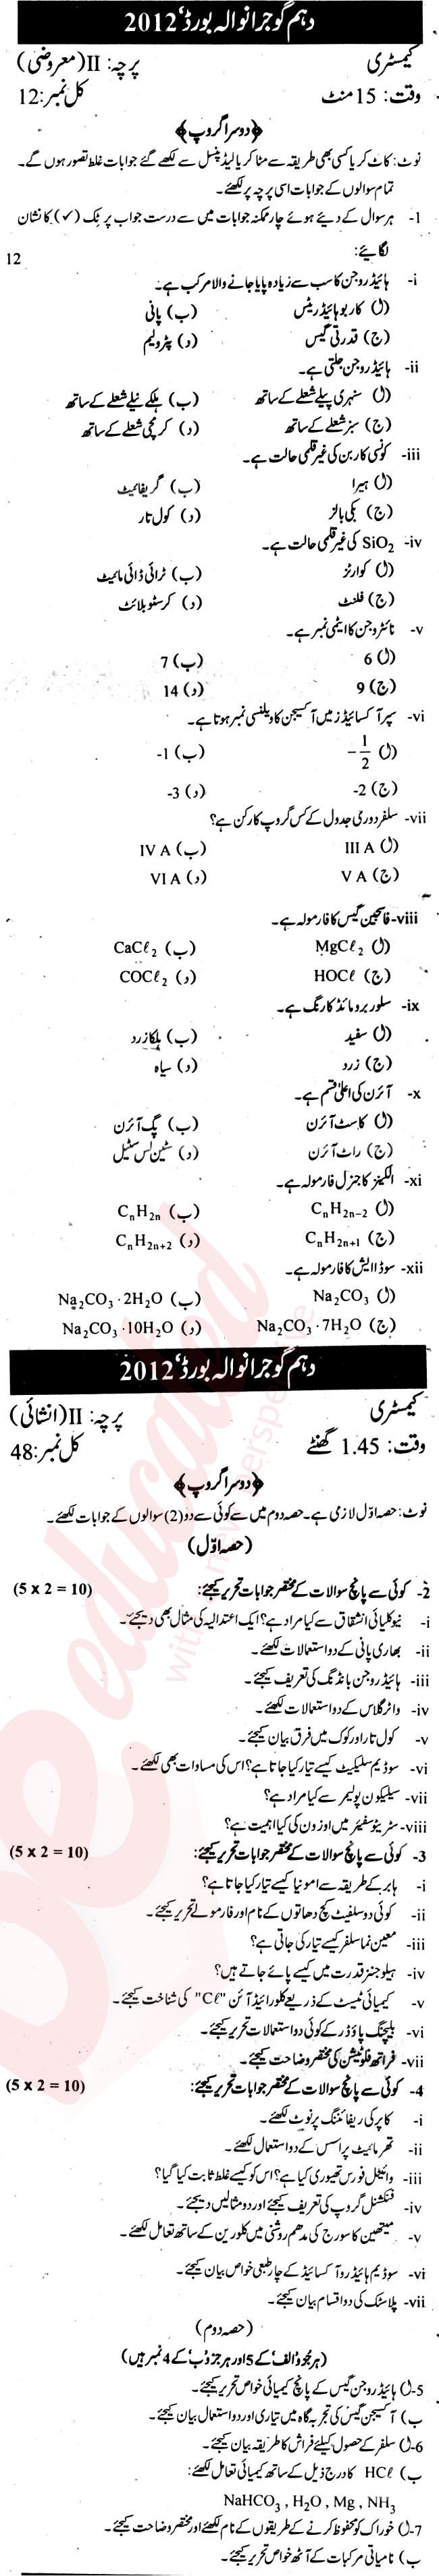 Chemistry 10th Urdu Medium Past Paper Group 2 BISE Gujranwala 2012